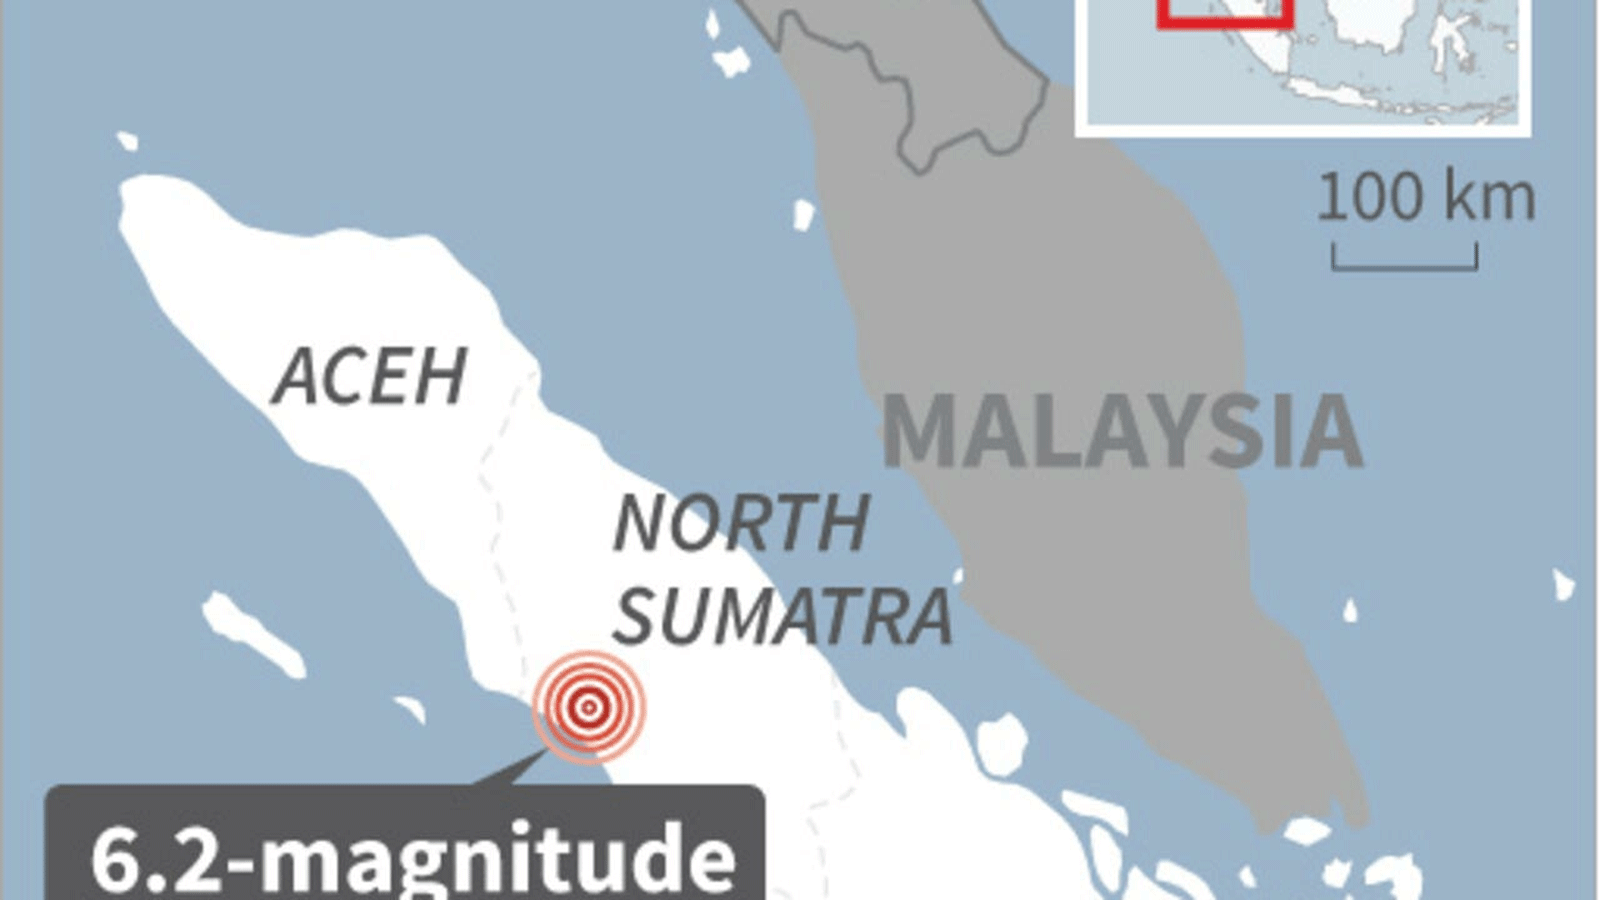 خريطة لإندونيسيا تحدد مركز الزلزال الذي بلغت قوته 6.2 درجة